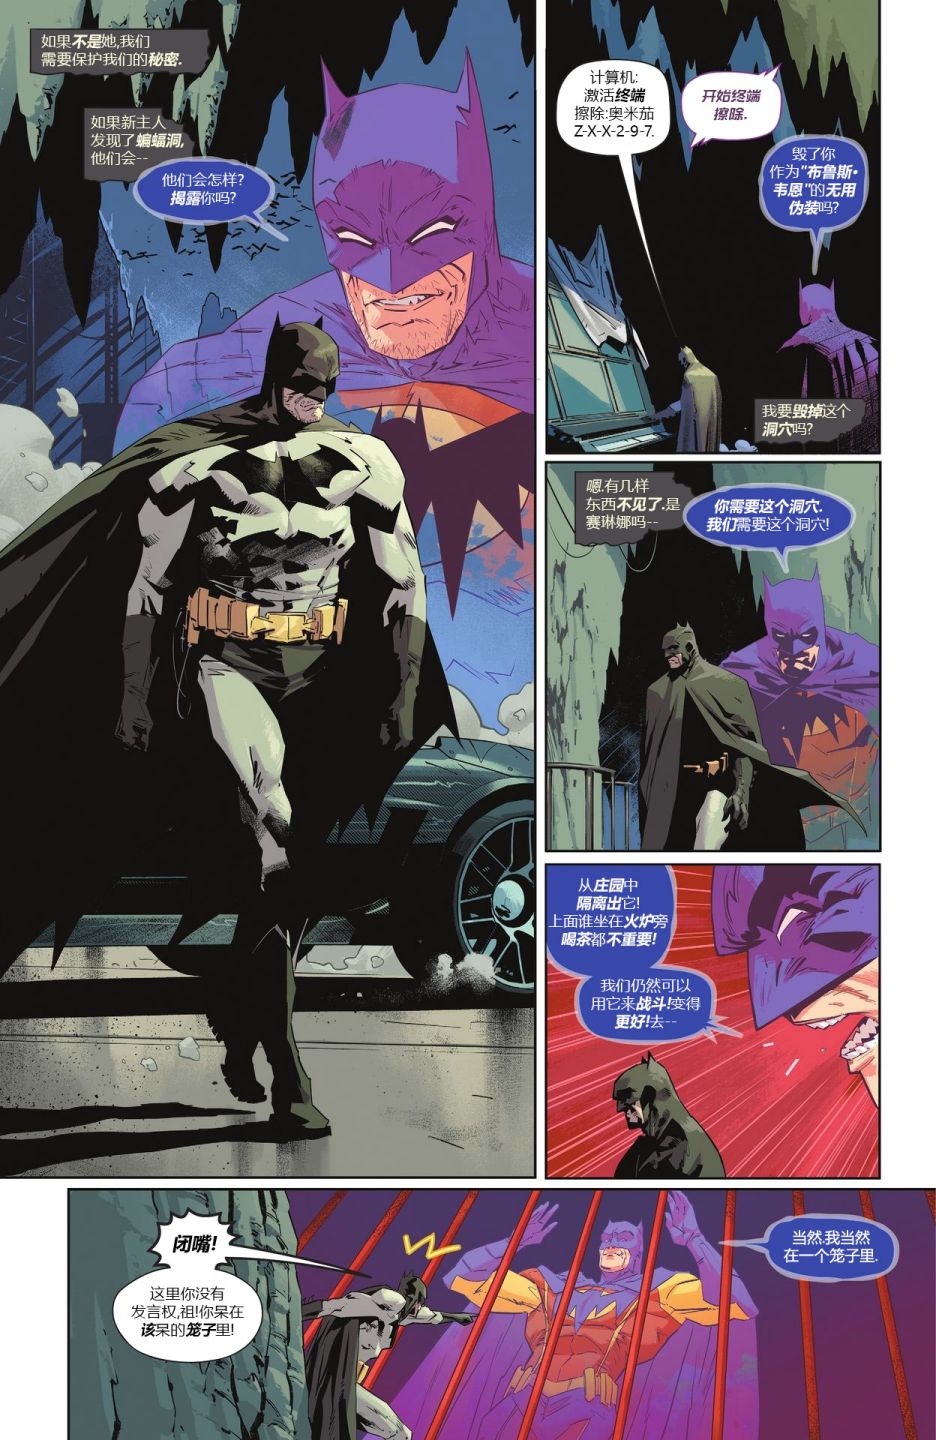 蝙蝠俠/貓女-哥譚戰爭 - 蝙蝠俠V3#137 - 6